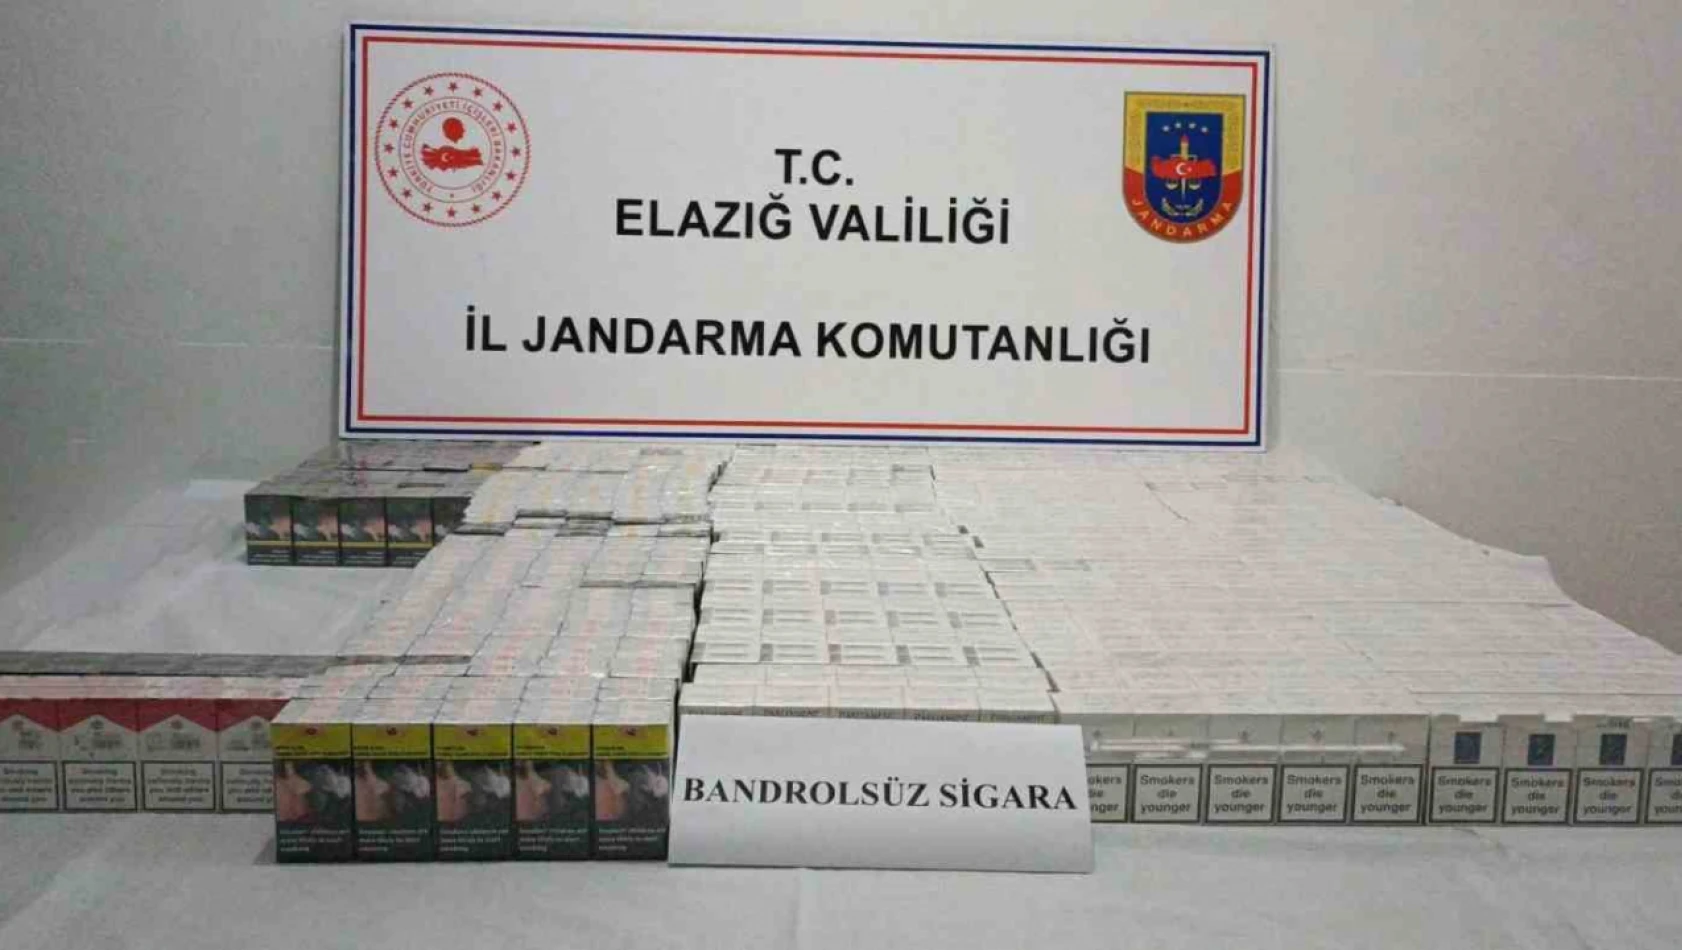 Elazığ'da 2 bin 100 paket kaçak sigara ele geçildi